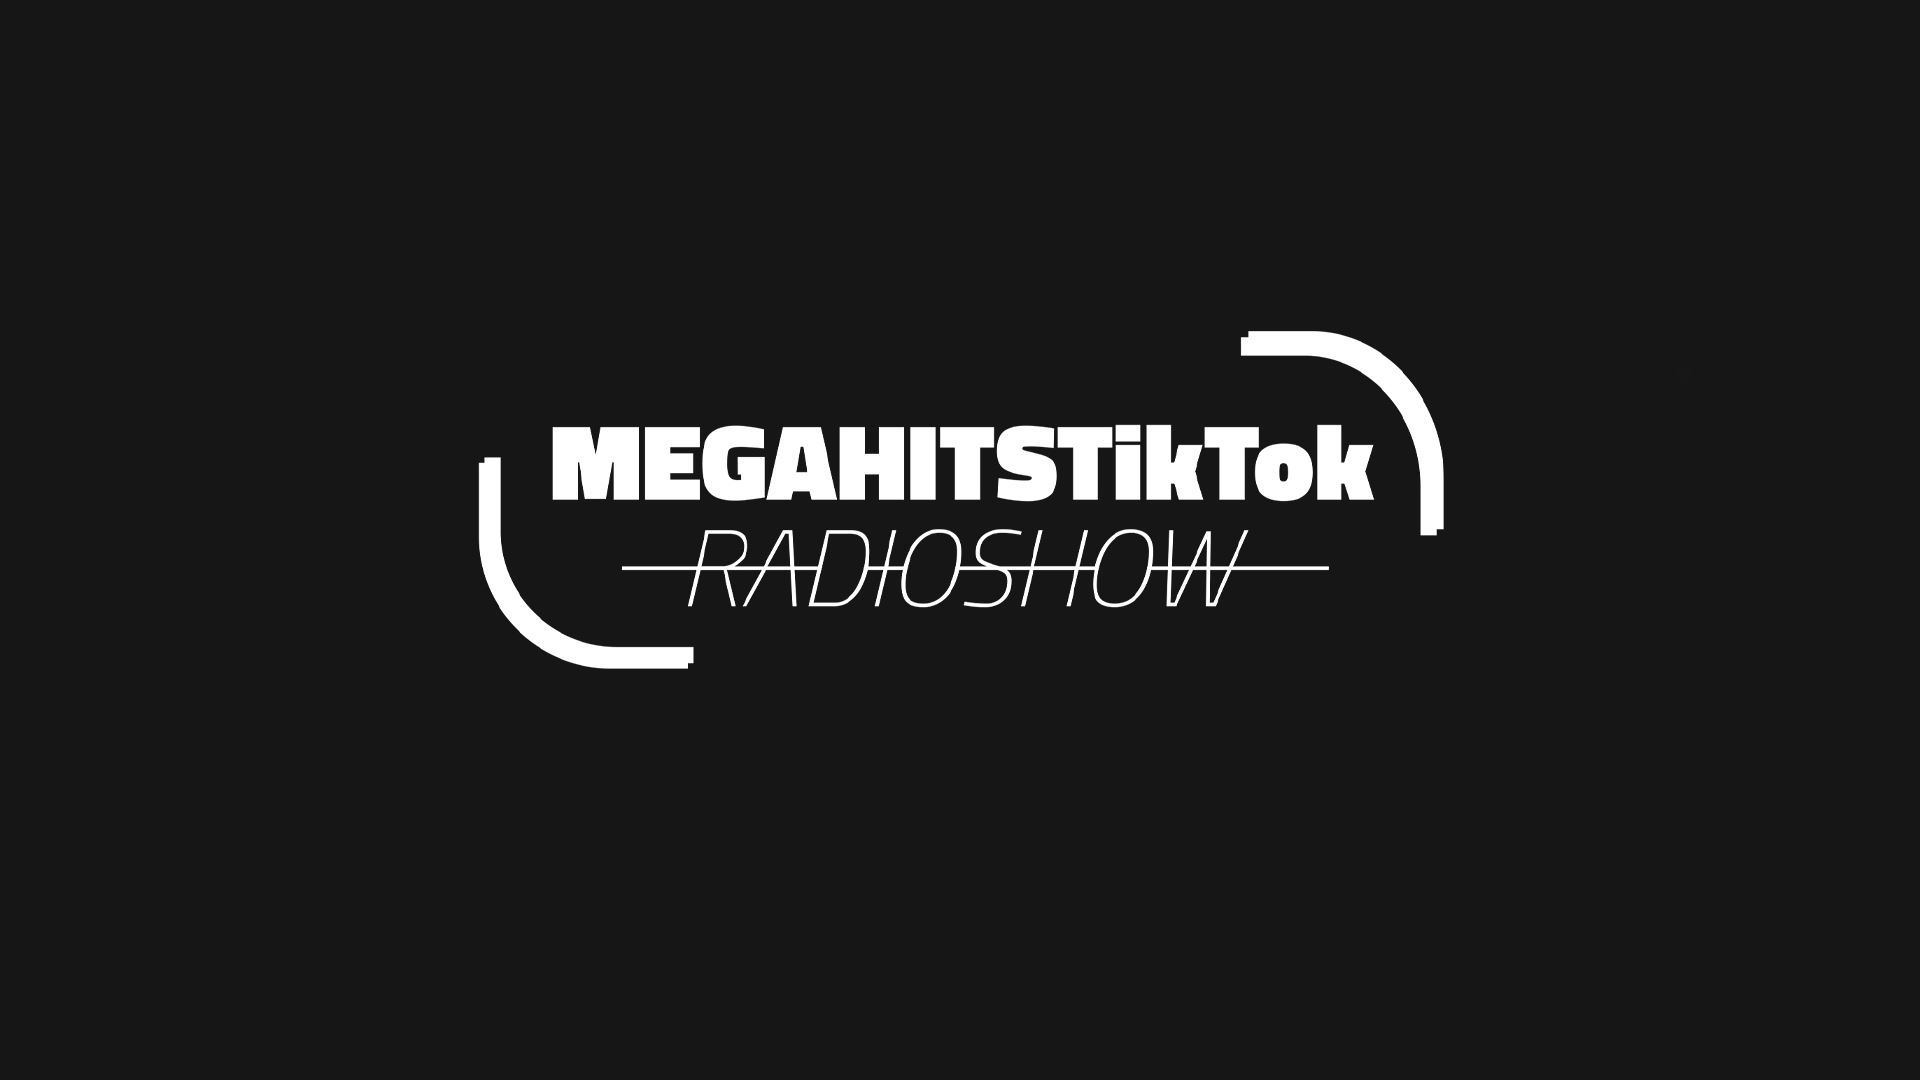 MEGAHITSTIKTOK Radioshow #81